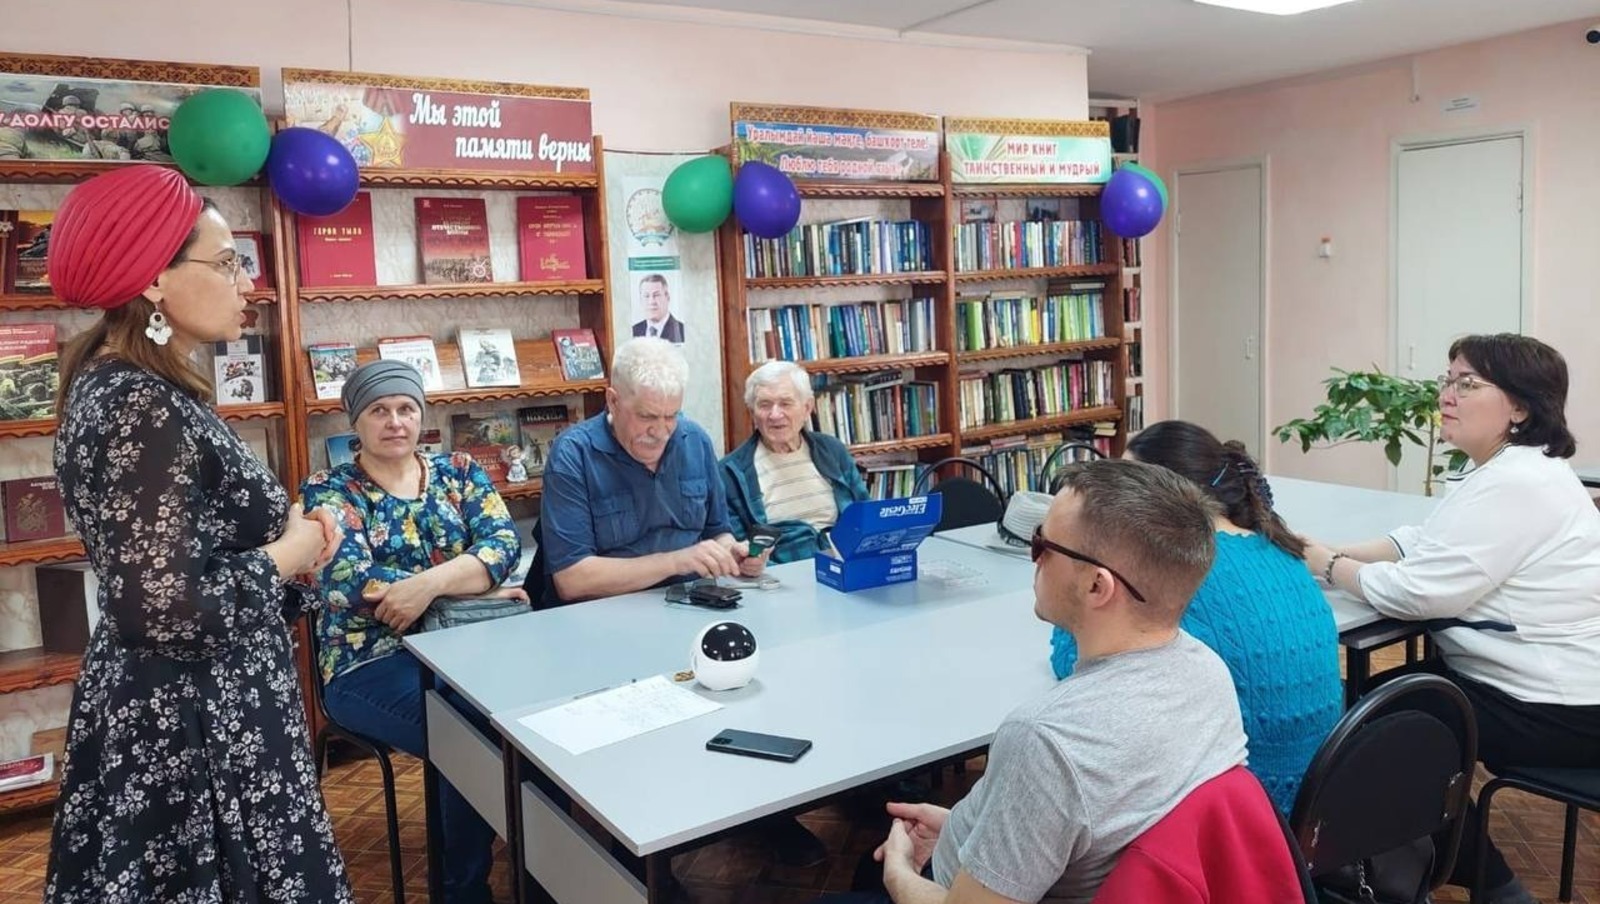 Благотворитель из Башкирии приобрел мебель для библиотеки и организовал турнир памяти Шаймуратова